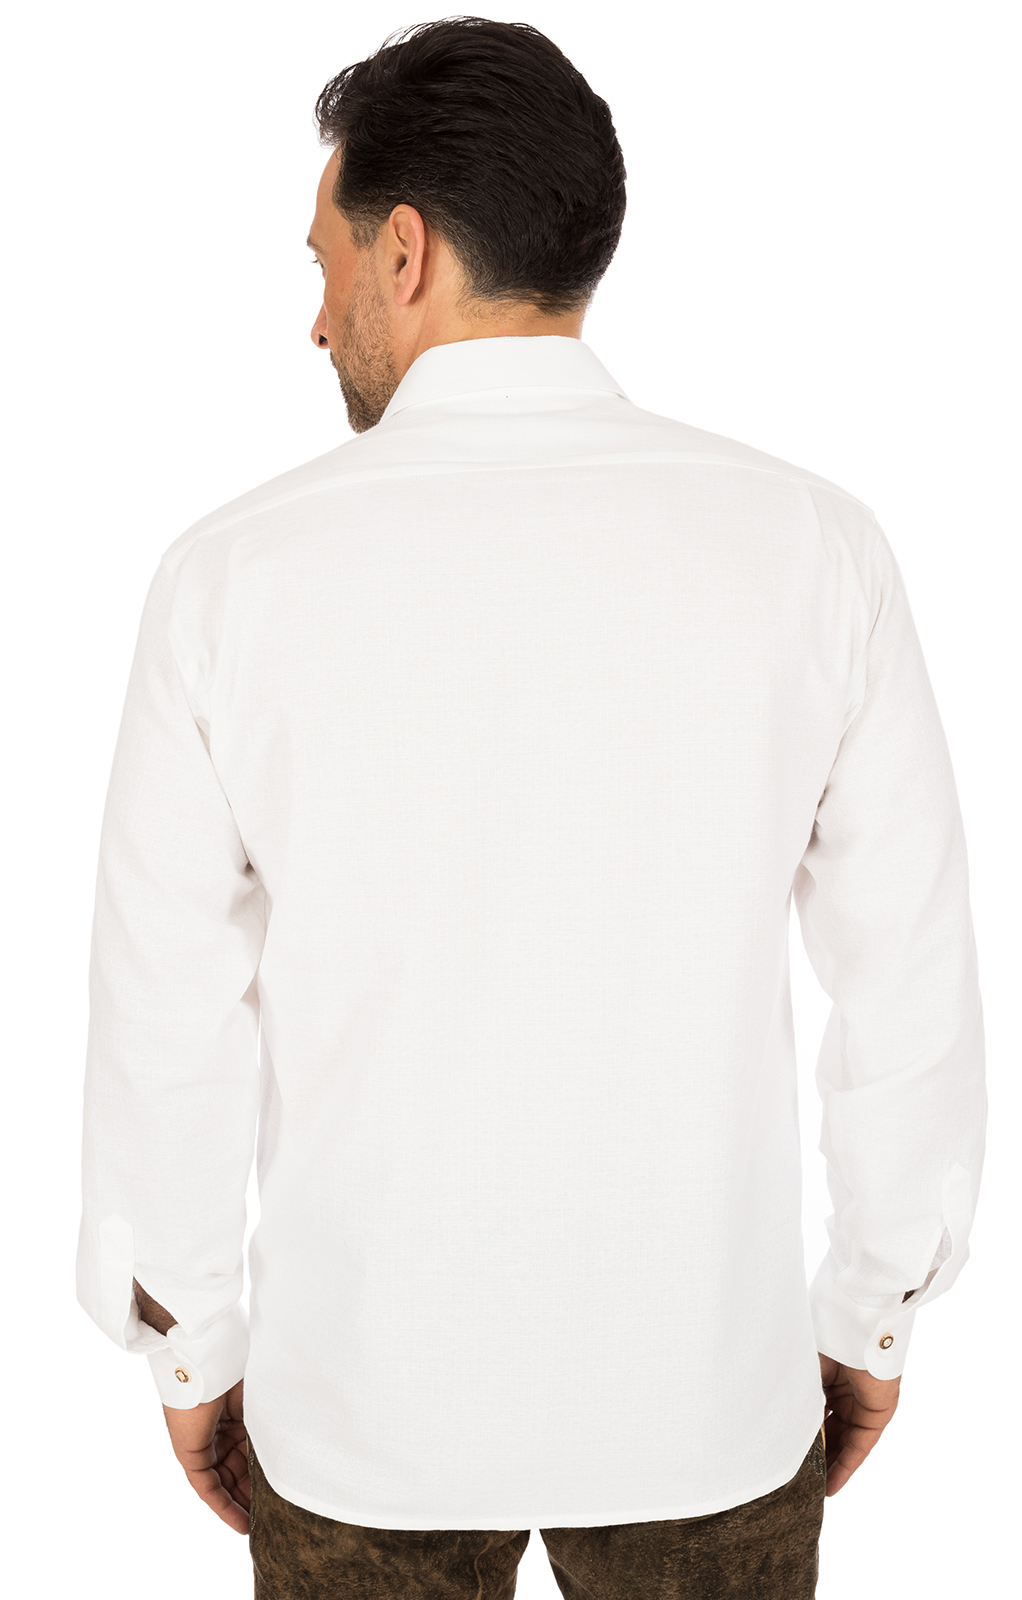 weitere Bilder von German traditional shirt EDGAR white